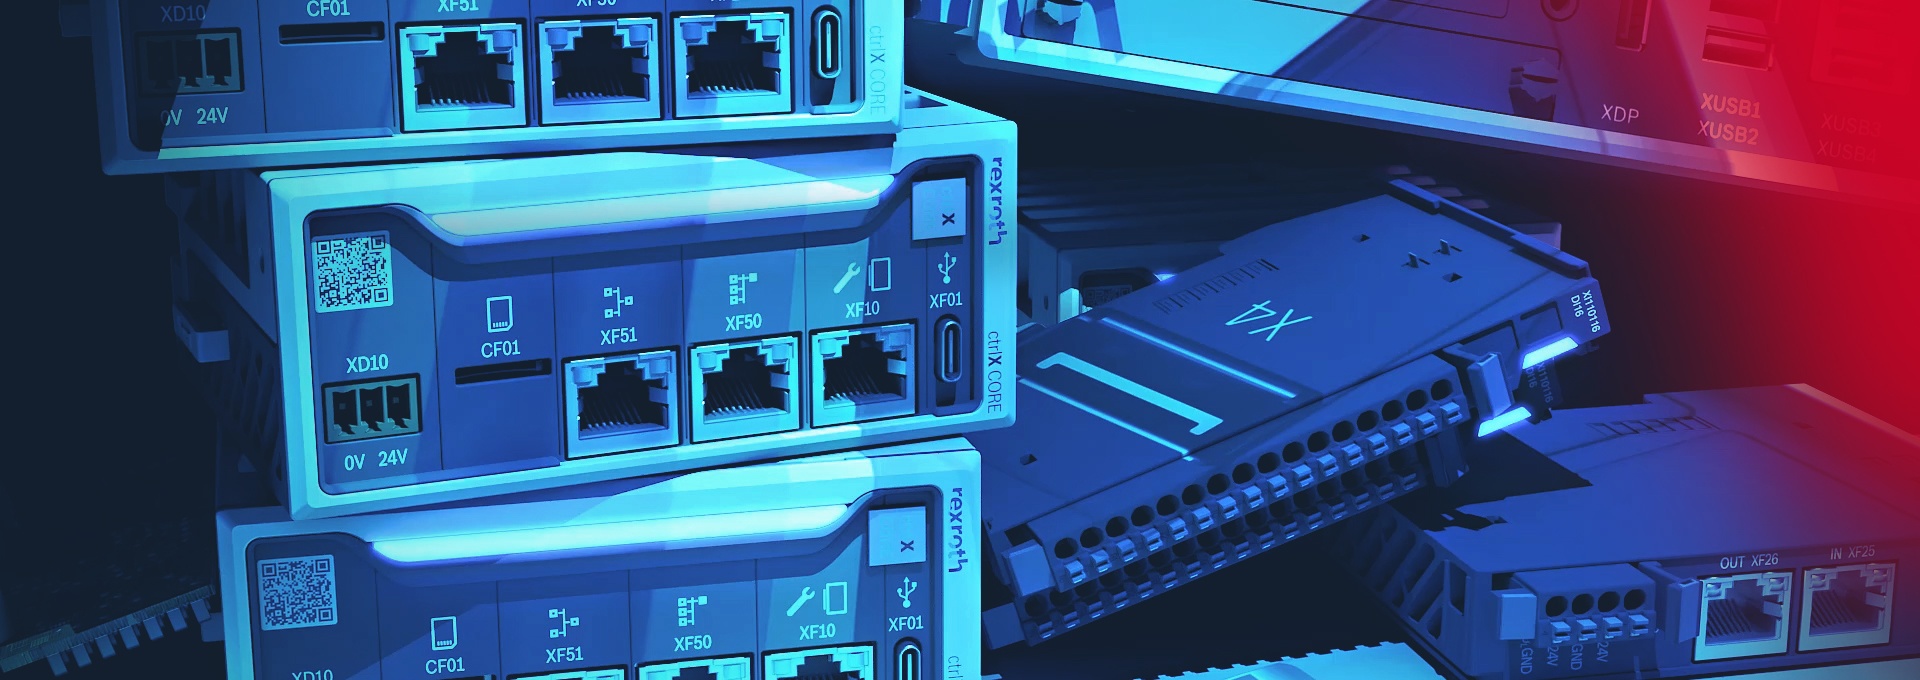 Blau gefärbtes Bild auf dem mehrere ctrlX AUTOMATION Komponenten zu sehen sind. Unter anderem die Steuerungshardware ctrlX CORE und die E/A-Komponenten ctrlX I/O.